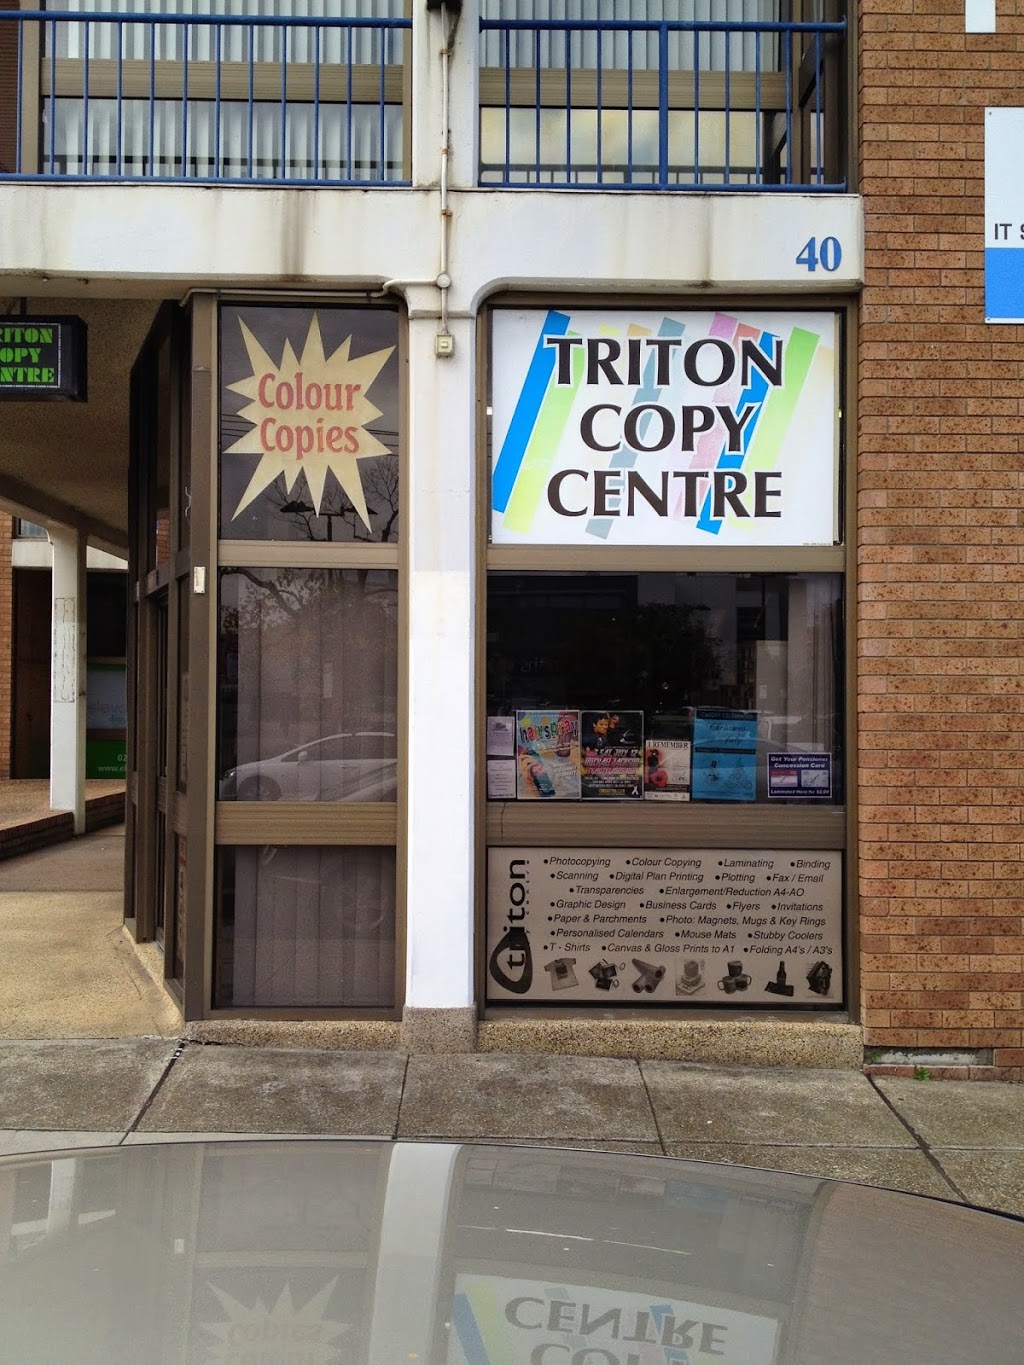 Triton Copy Centre | store | 40 Harrison St, Cardiff NSW 2285, Australia | 0249547499 OR +61 2 4954 7499